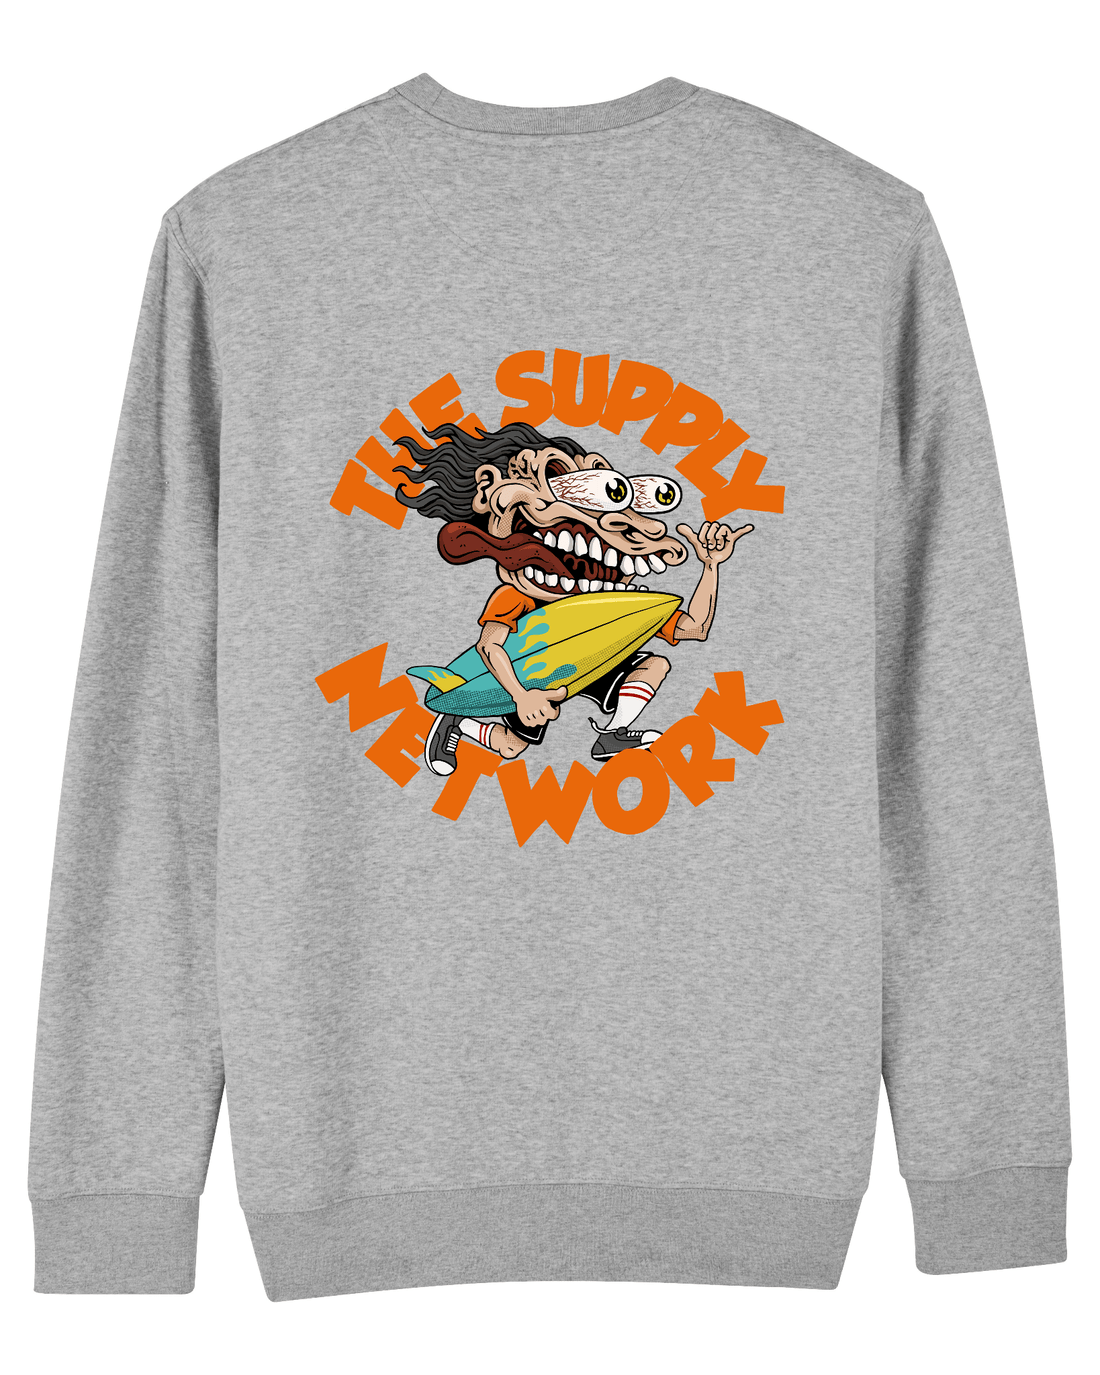 Grey Skater Sweatshirt, Surf Crazy Back